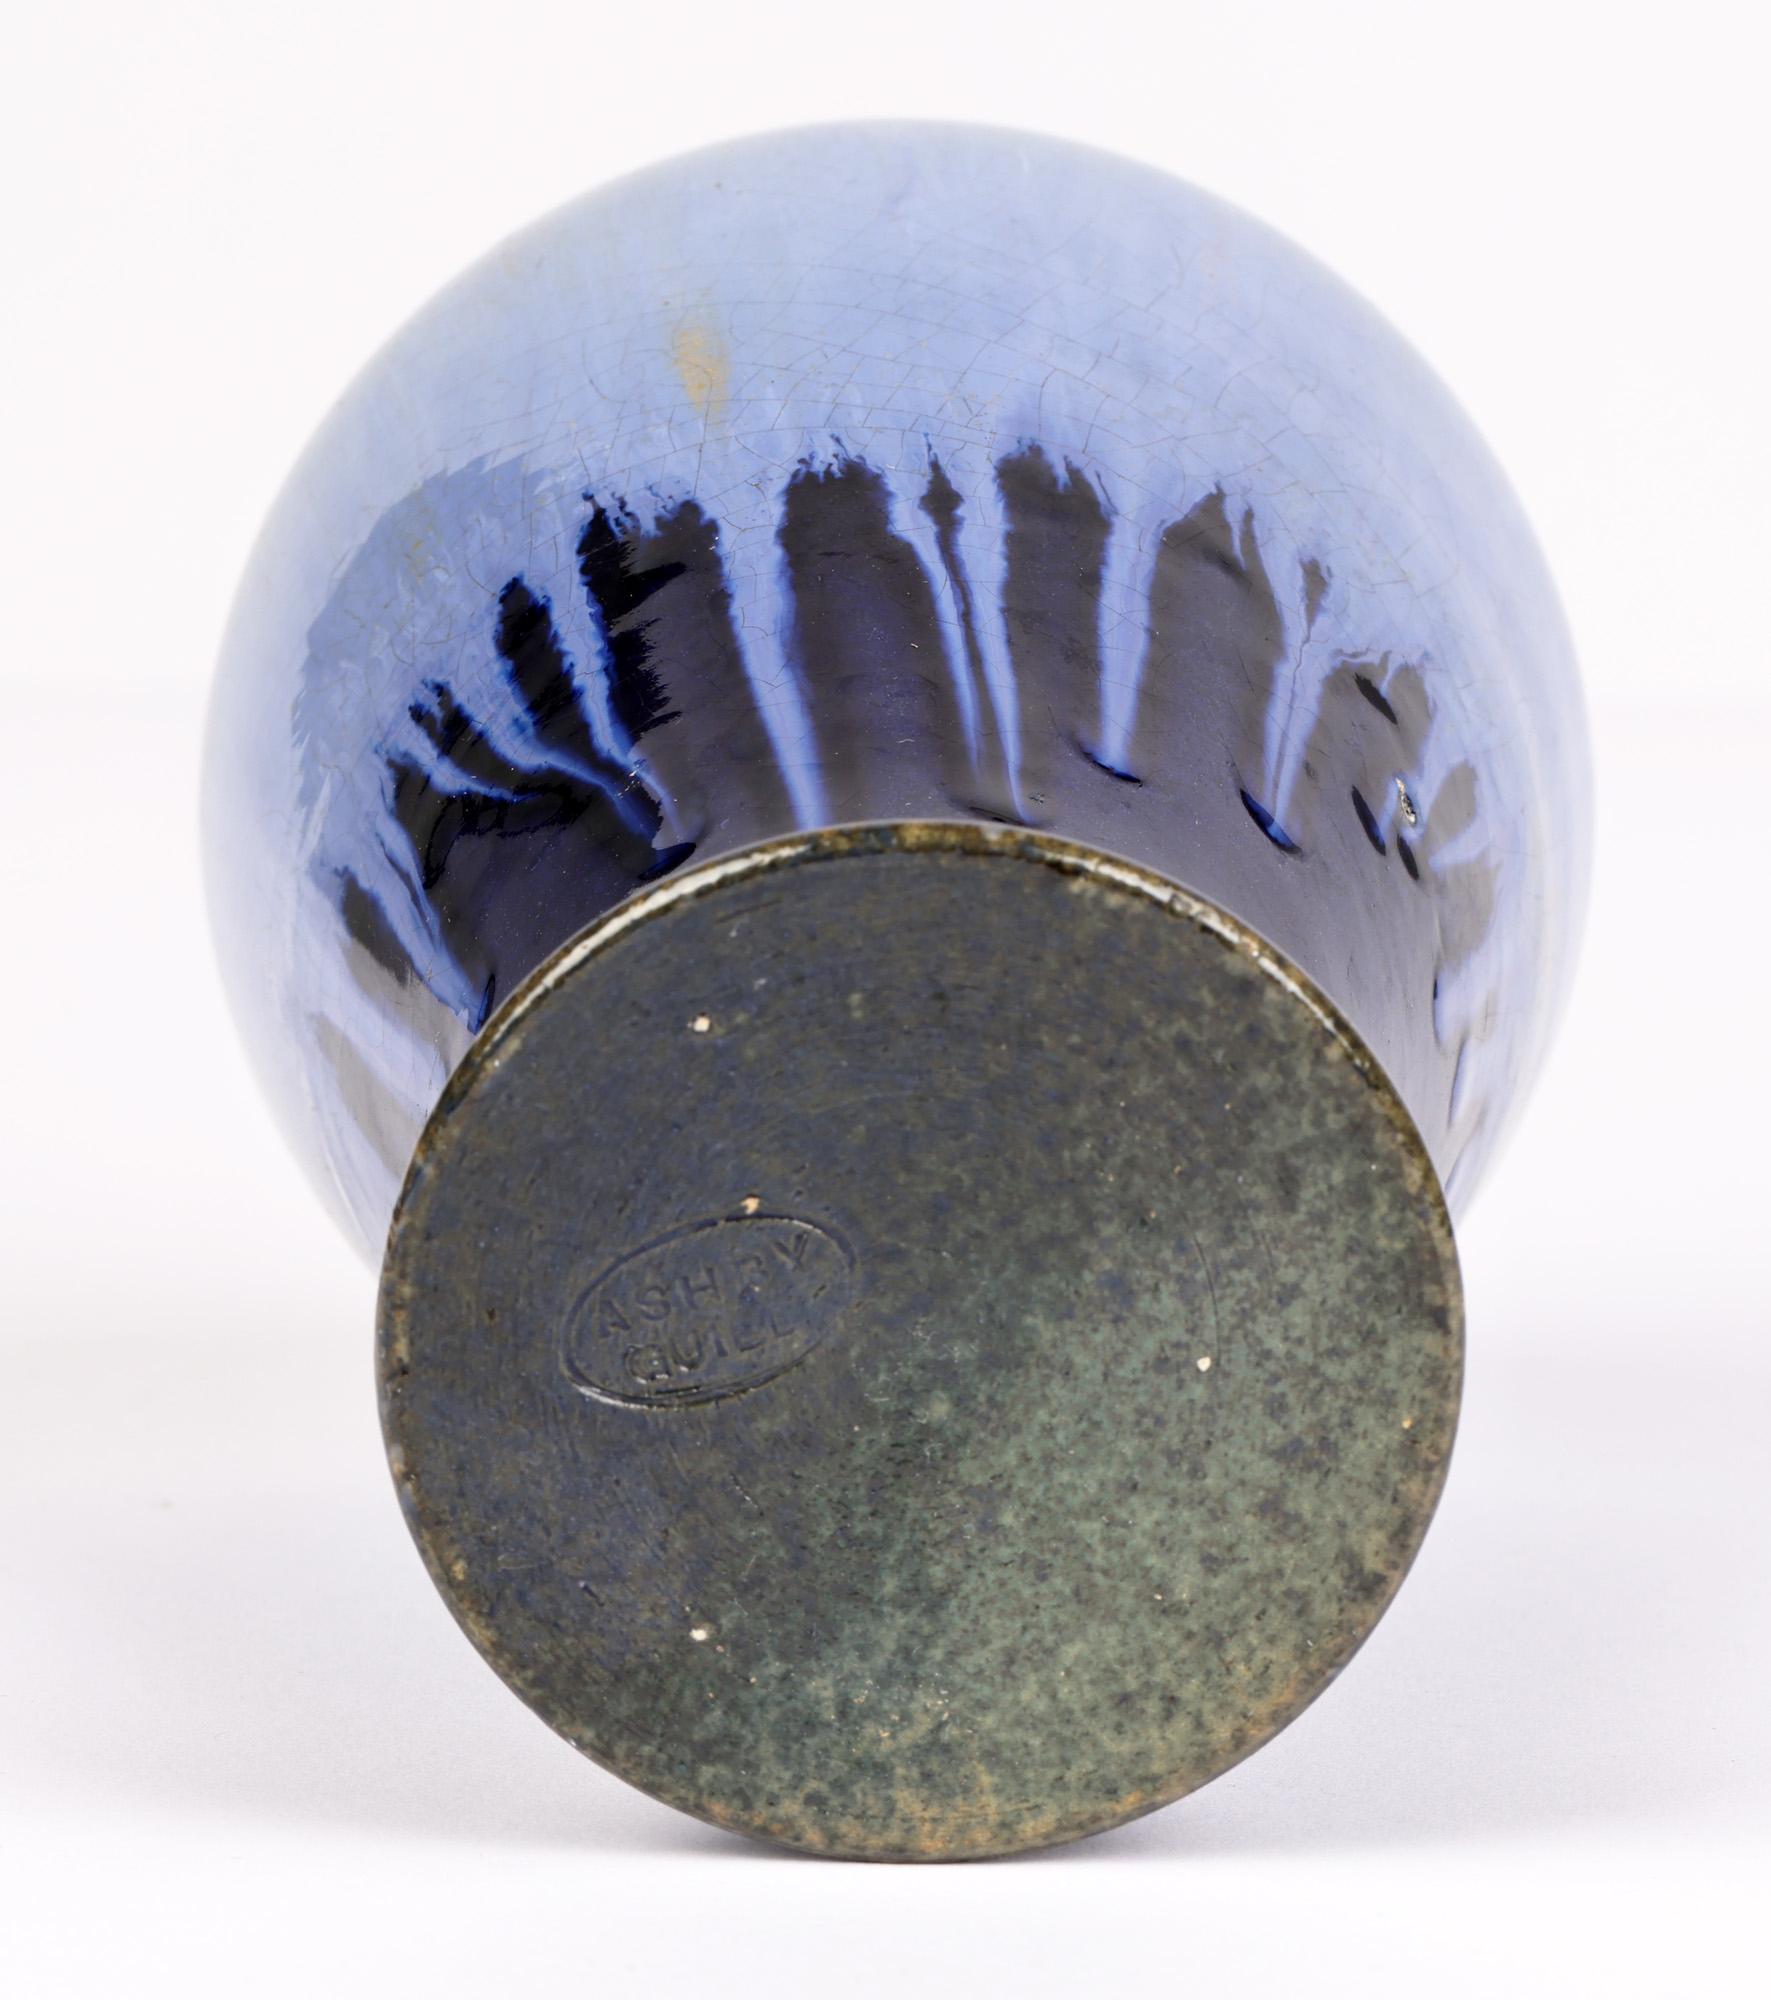 Ashby Potters Guild Art Nouveau Mottled Blue Glazed Vase For Sale 5